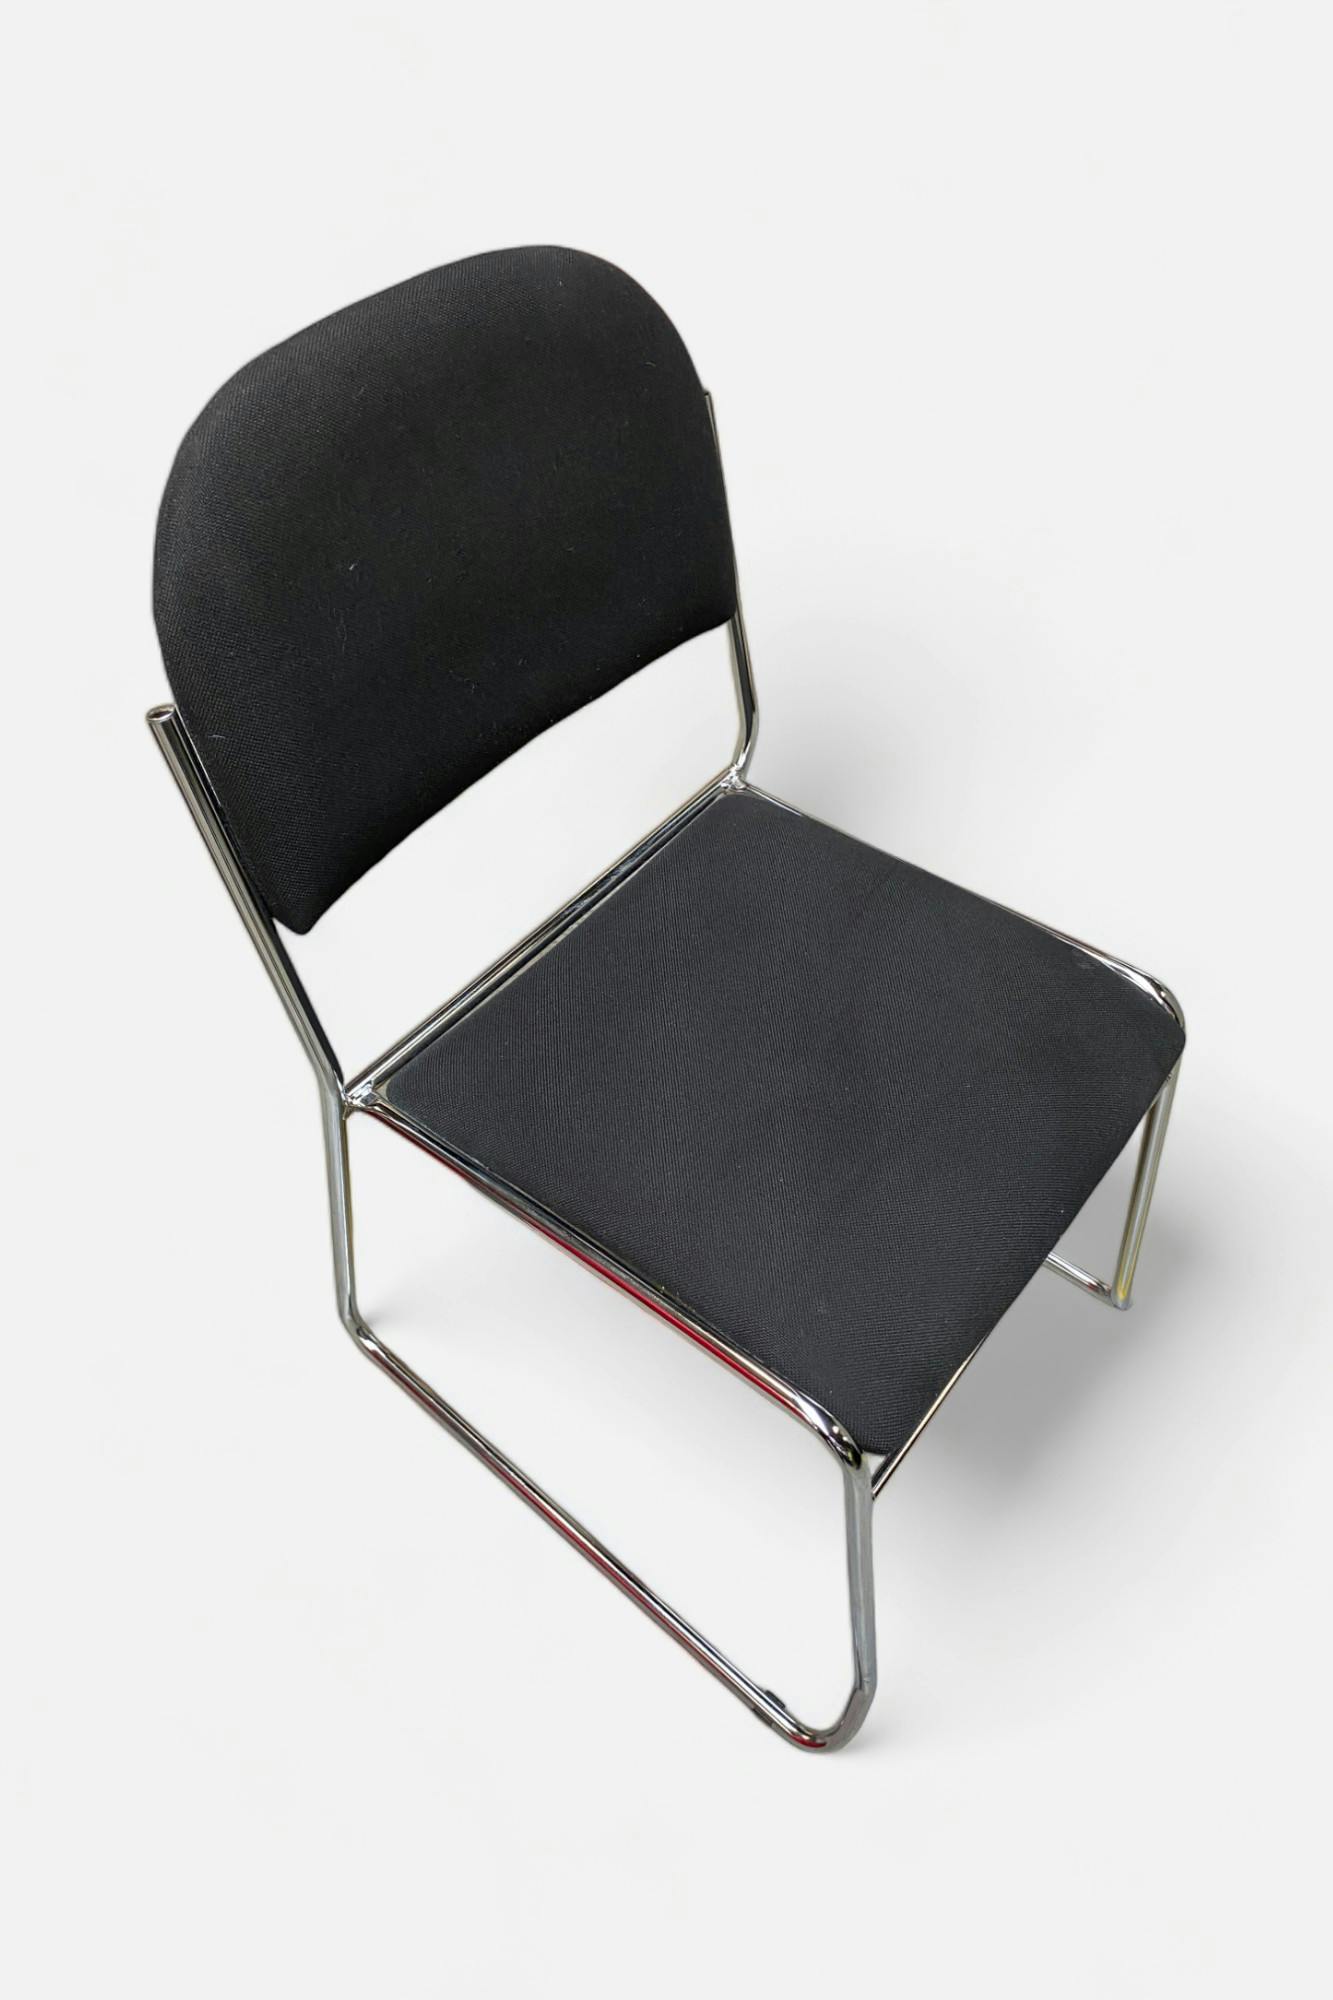 Black meeting chair on steel legs - Relieve Furniture